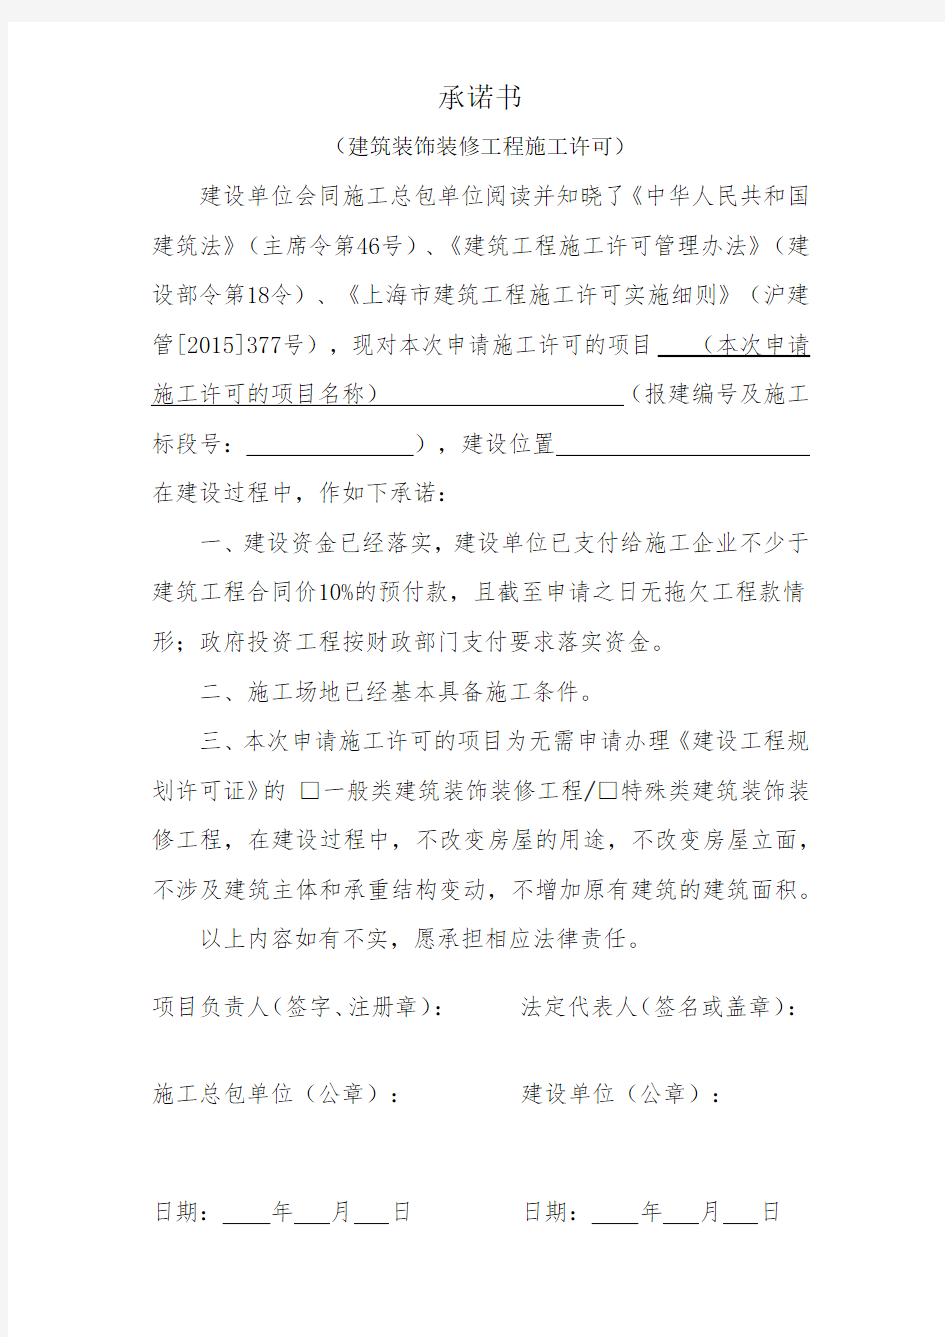 附表3--上海市建筑工程施工许可申请承诺书